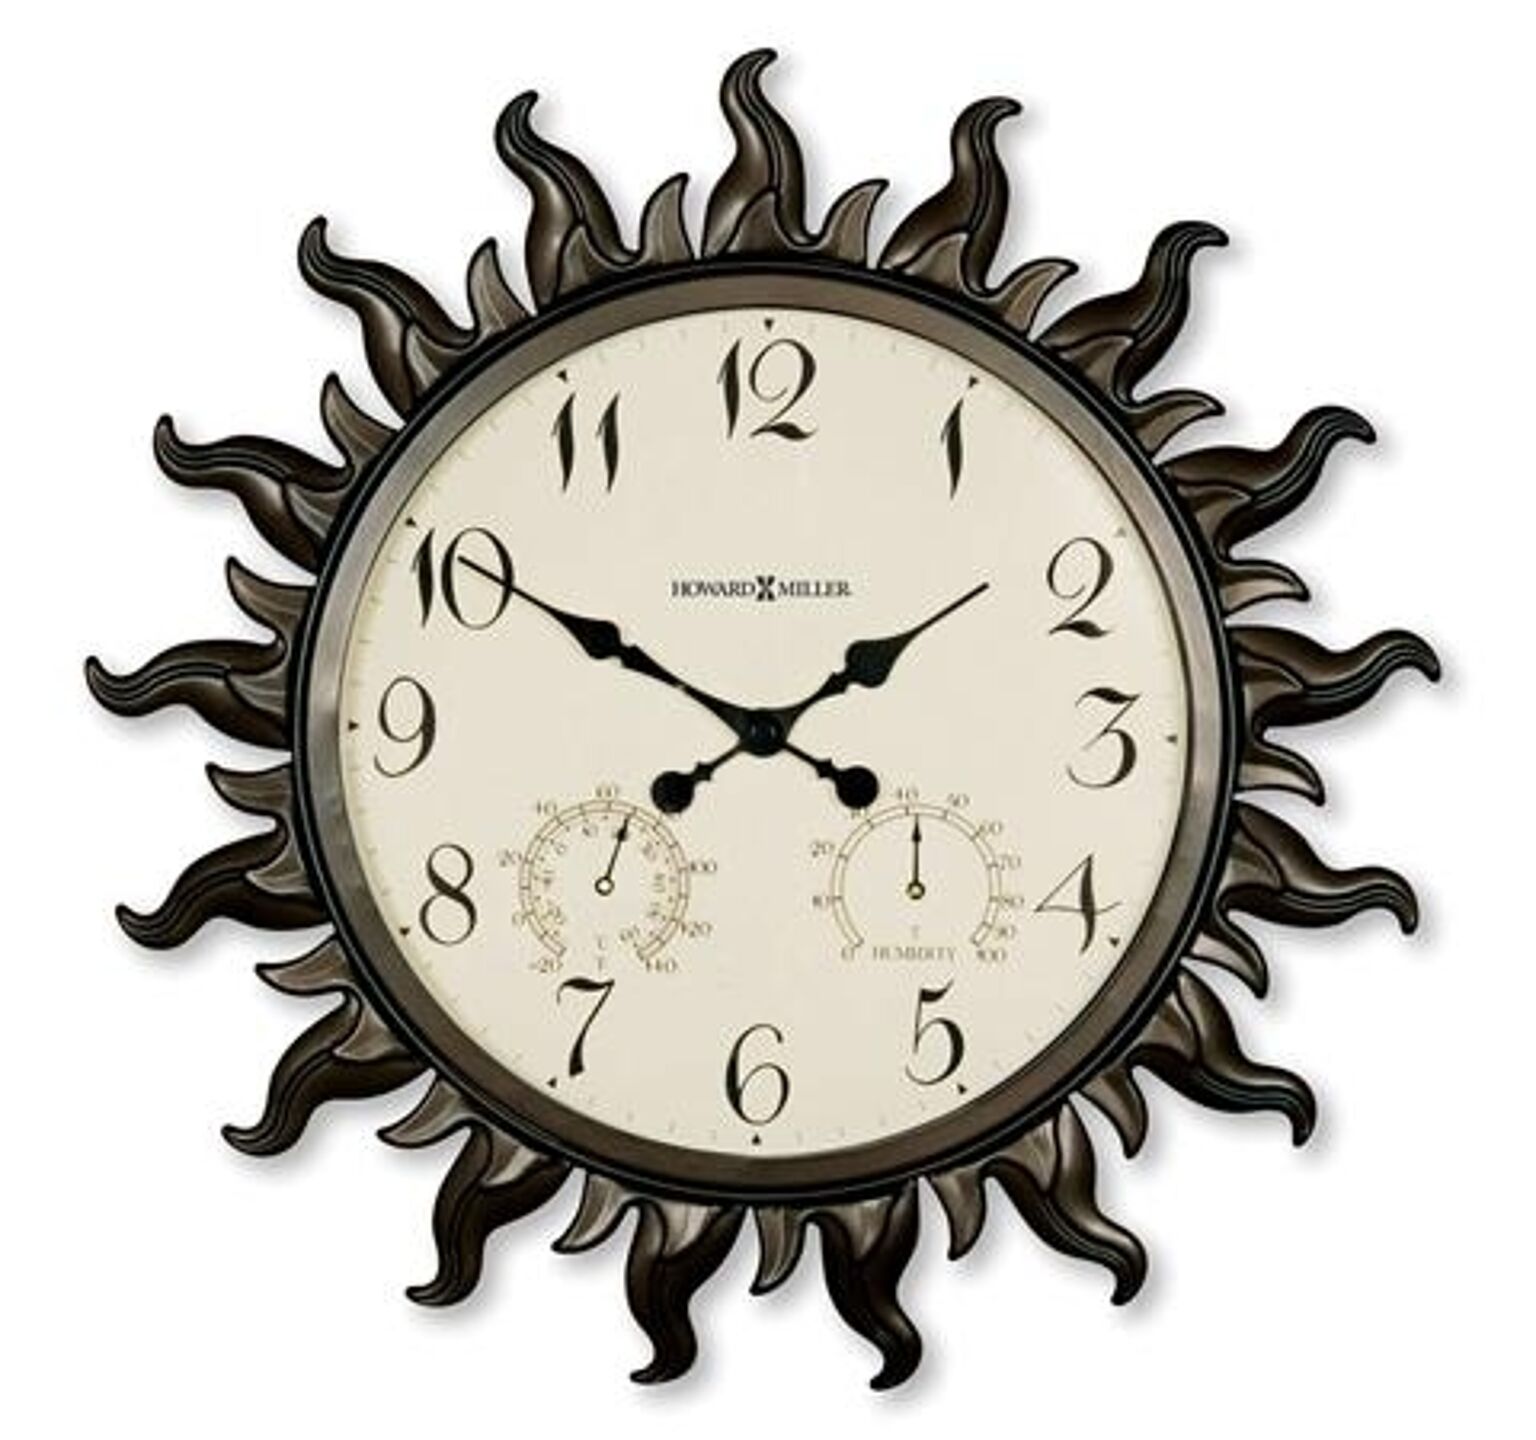 【正規輸入品】 アメリカ ハワードミラー 625-543 HOWARD MILLER SUNBURST II クオーツ（電池式） 掛け時計